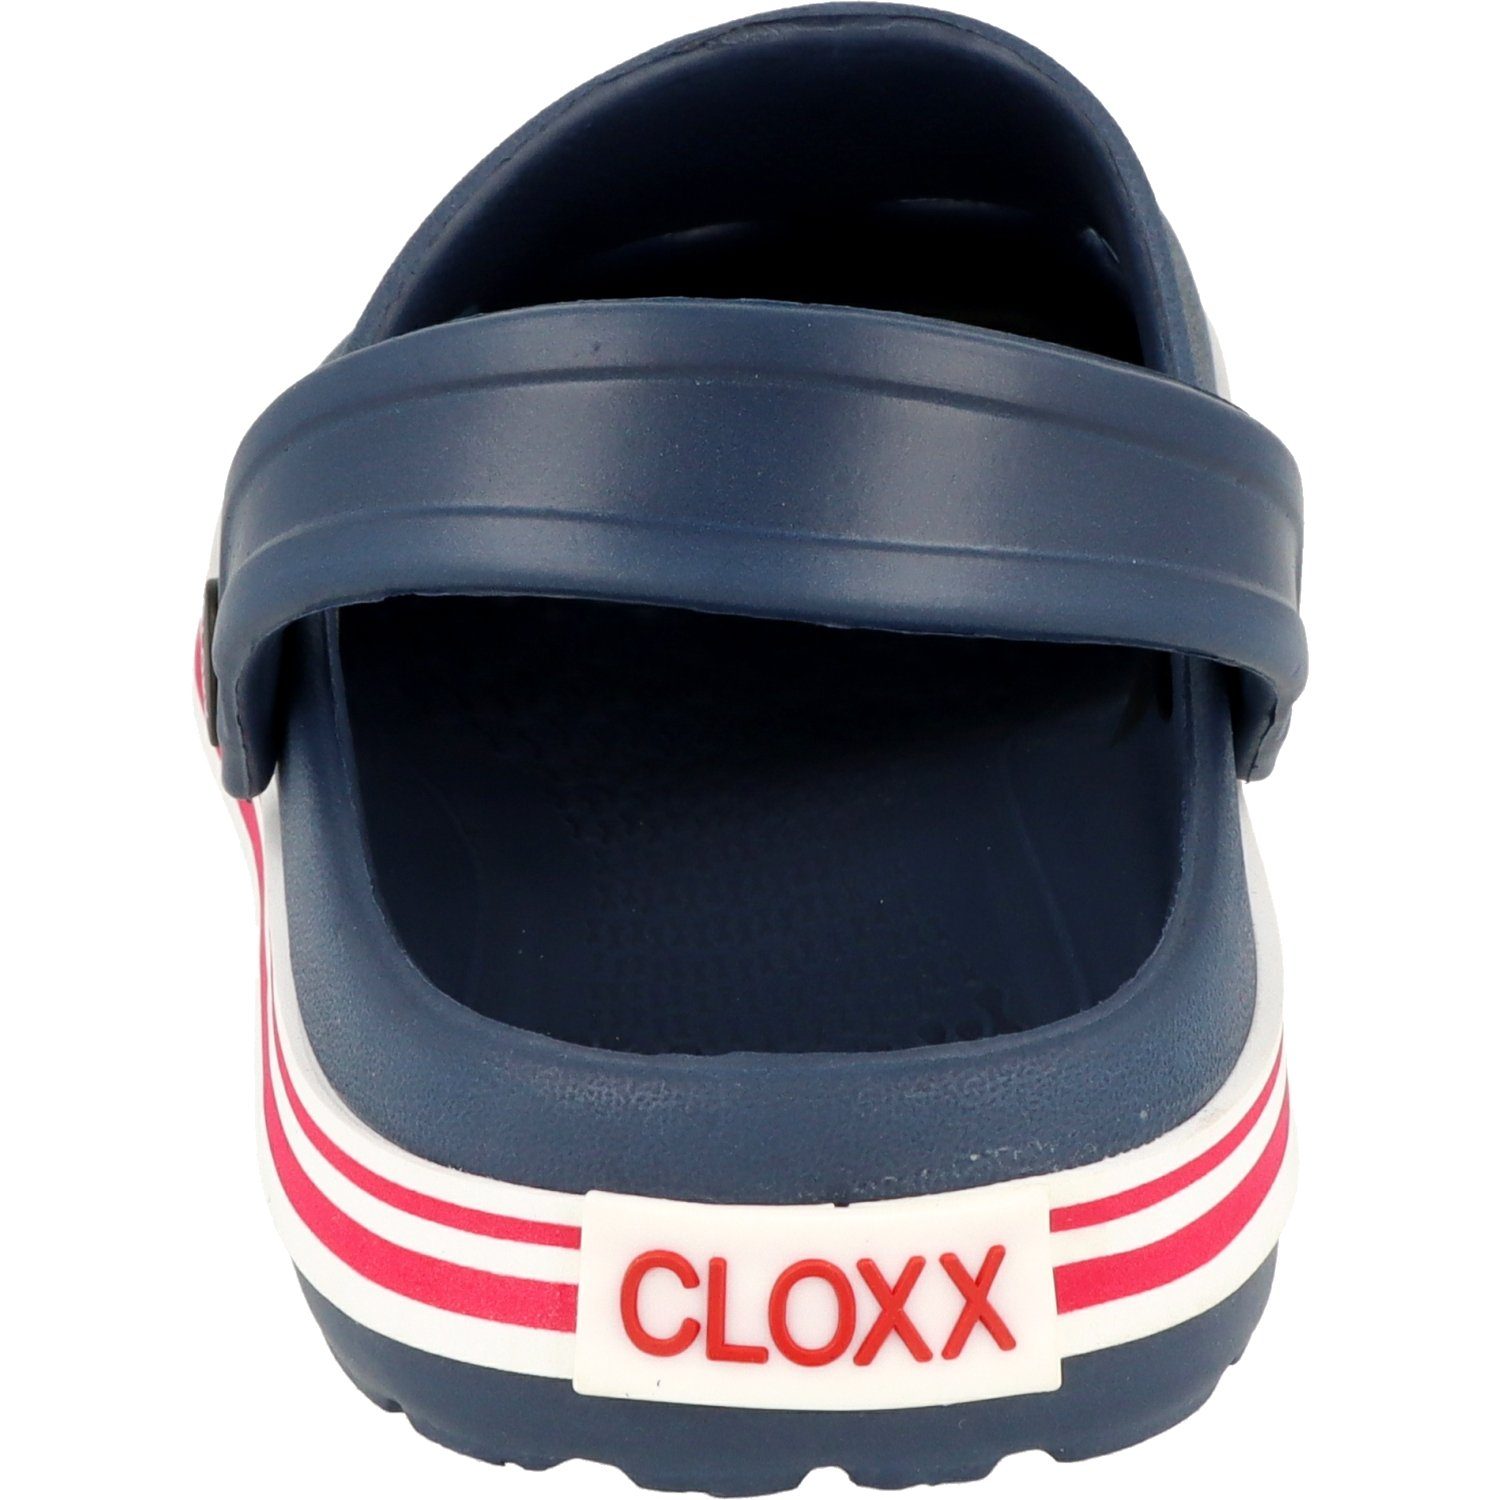 Cloxx Unisex Gr.28-46 Hausschuhe Clog Schuhe Blau R88410.45 Gummi Pantoletten